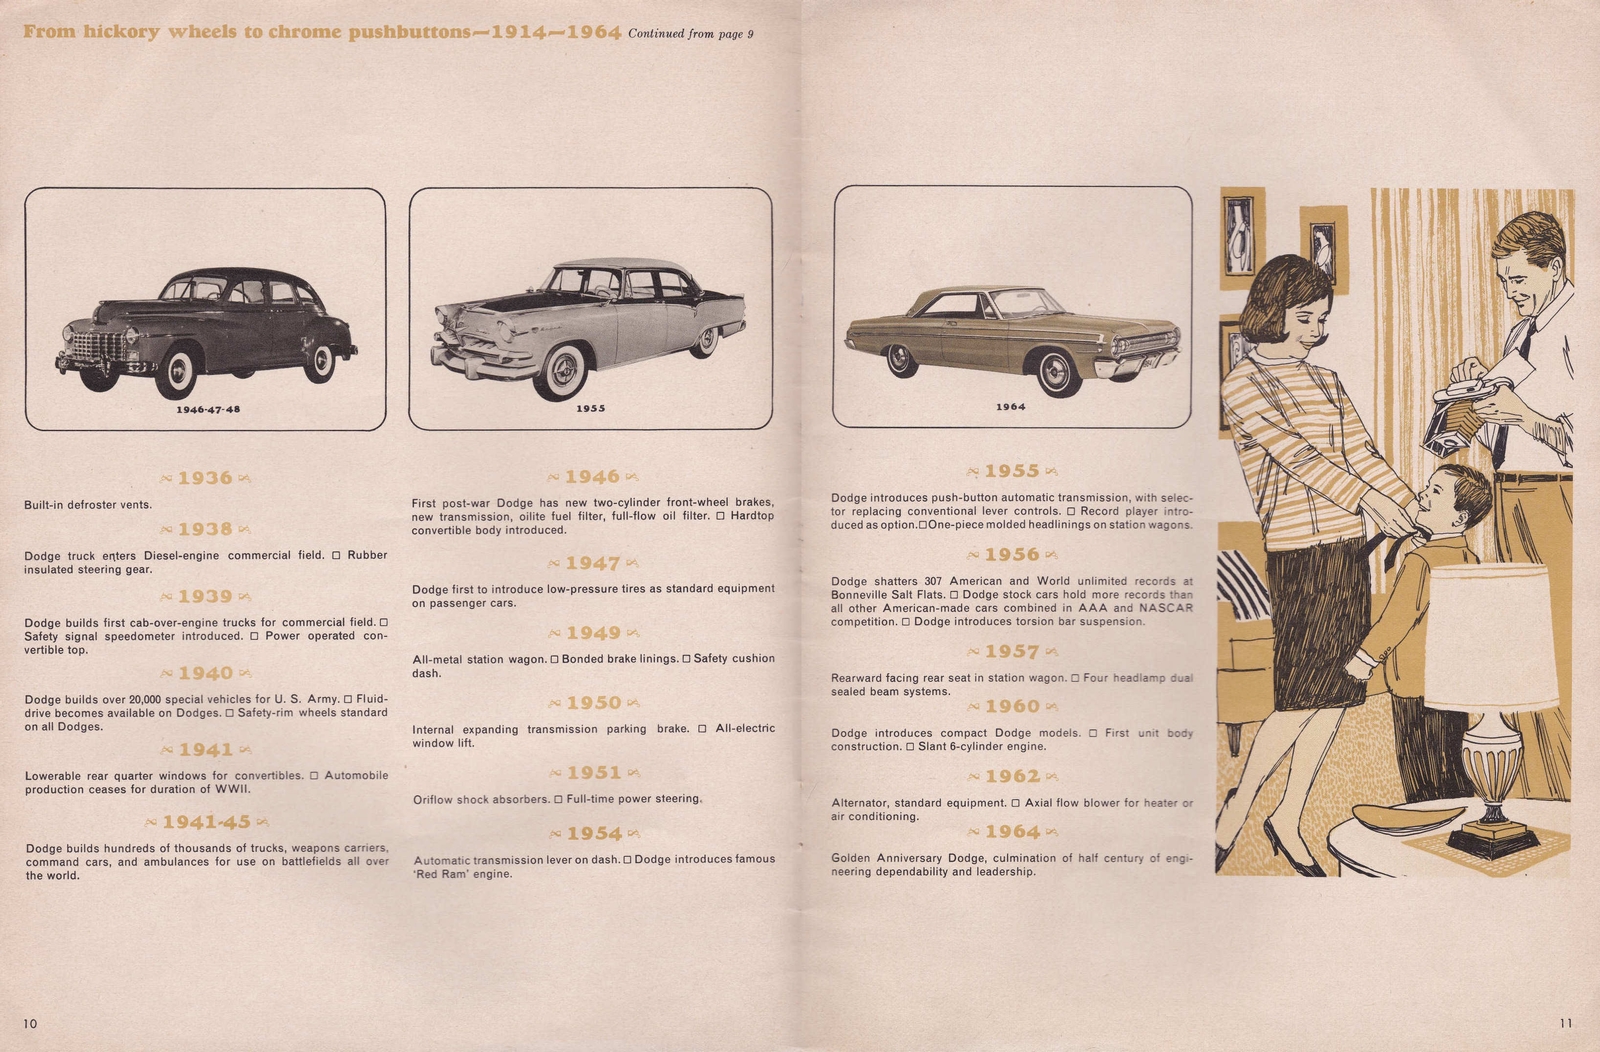 n_1964 Dodge Golden Jubilee Magazine-10-11.jpg